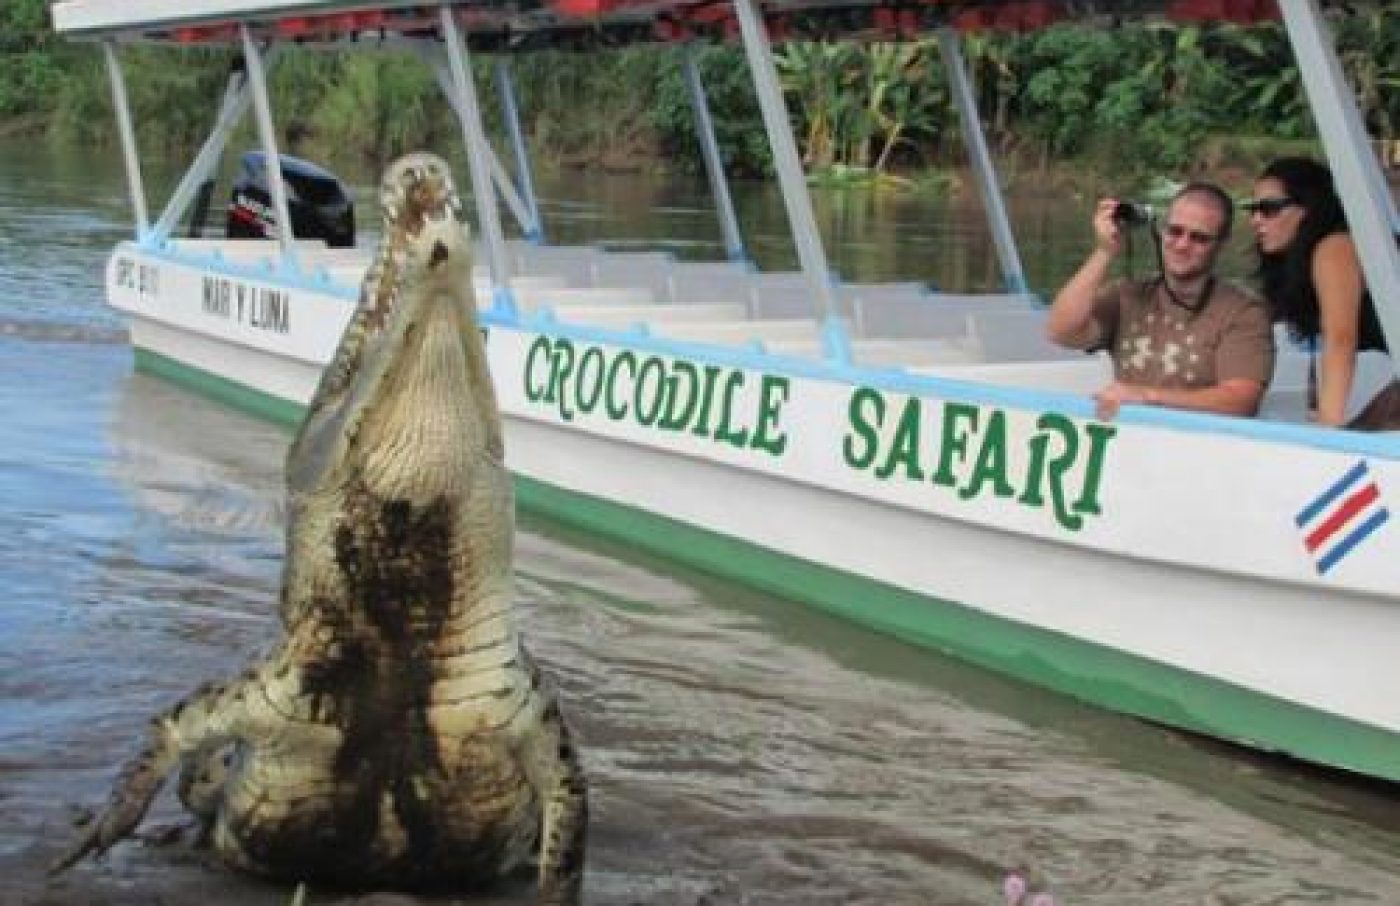 Jungle Crocodile Safari - Discover The Crocs!